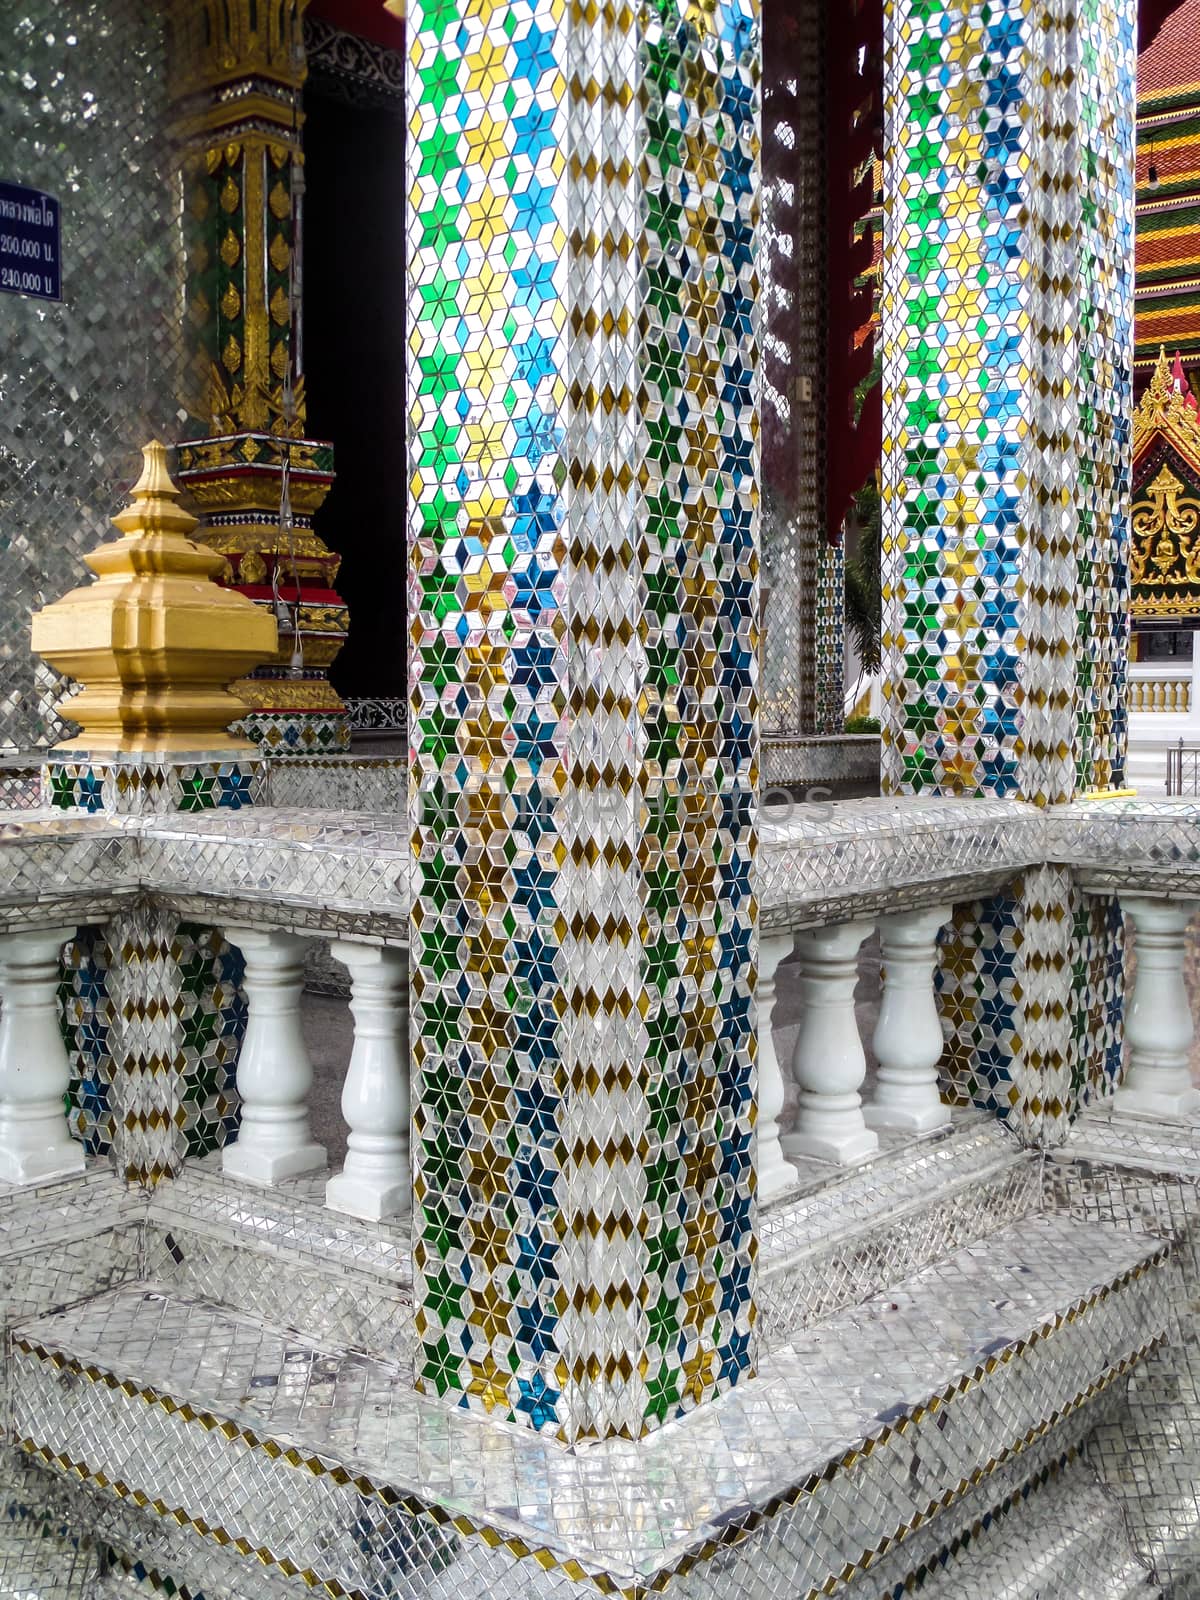 Thai Cathedral glass at Wat Prachum Kongka Banglamung Chonburi